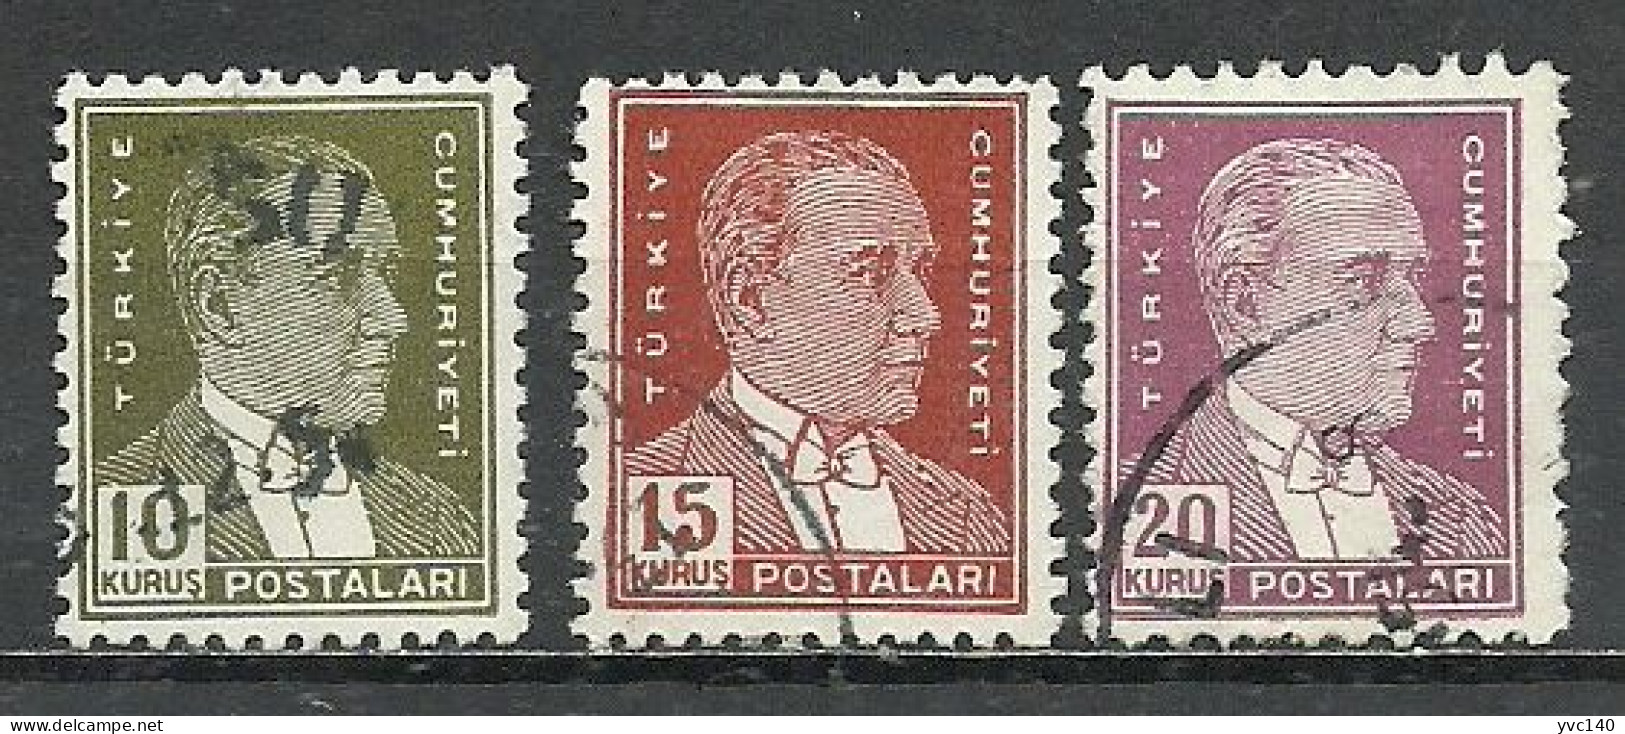 Turkey; 1953 8th Ataturk Issue Stamps - Gebruikt